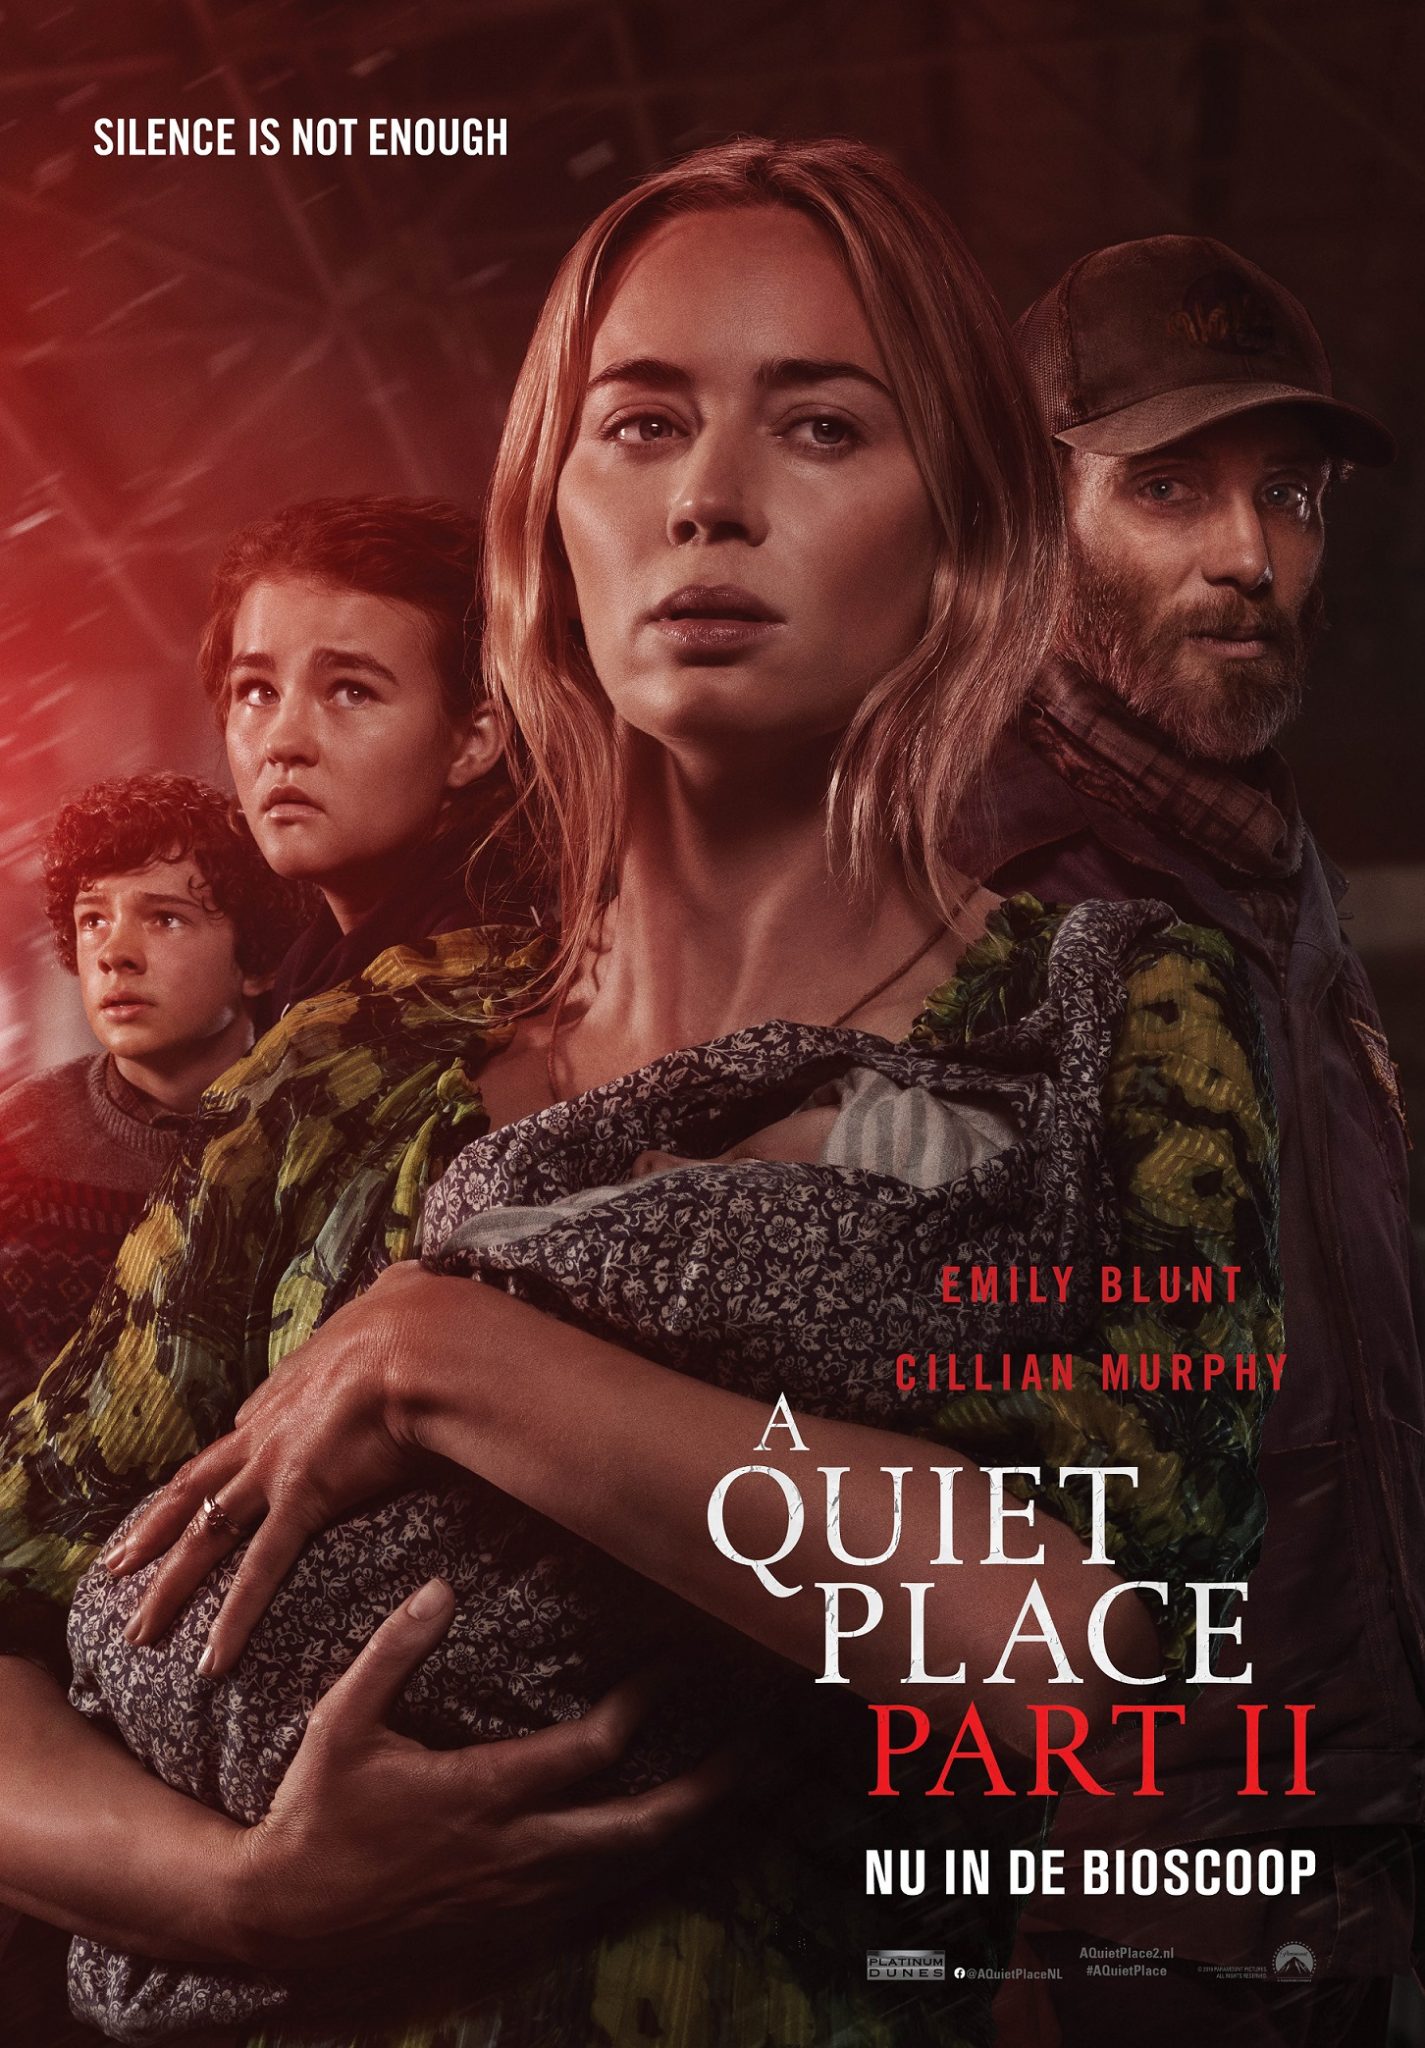 Nieuwe poster voor A Quiet Place Part II Entertainmenthoek.nl